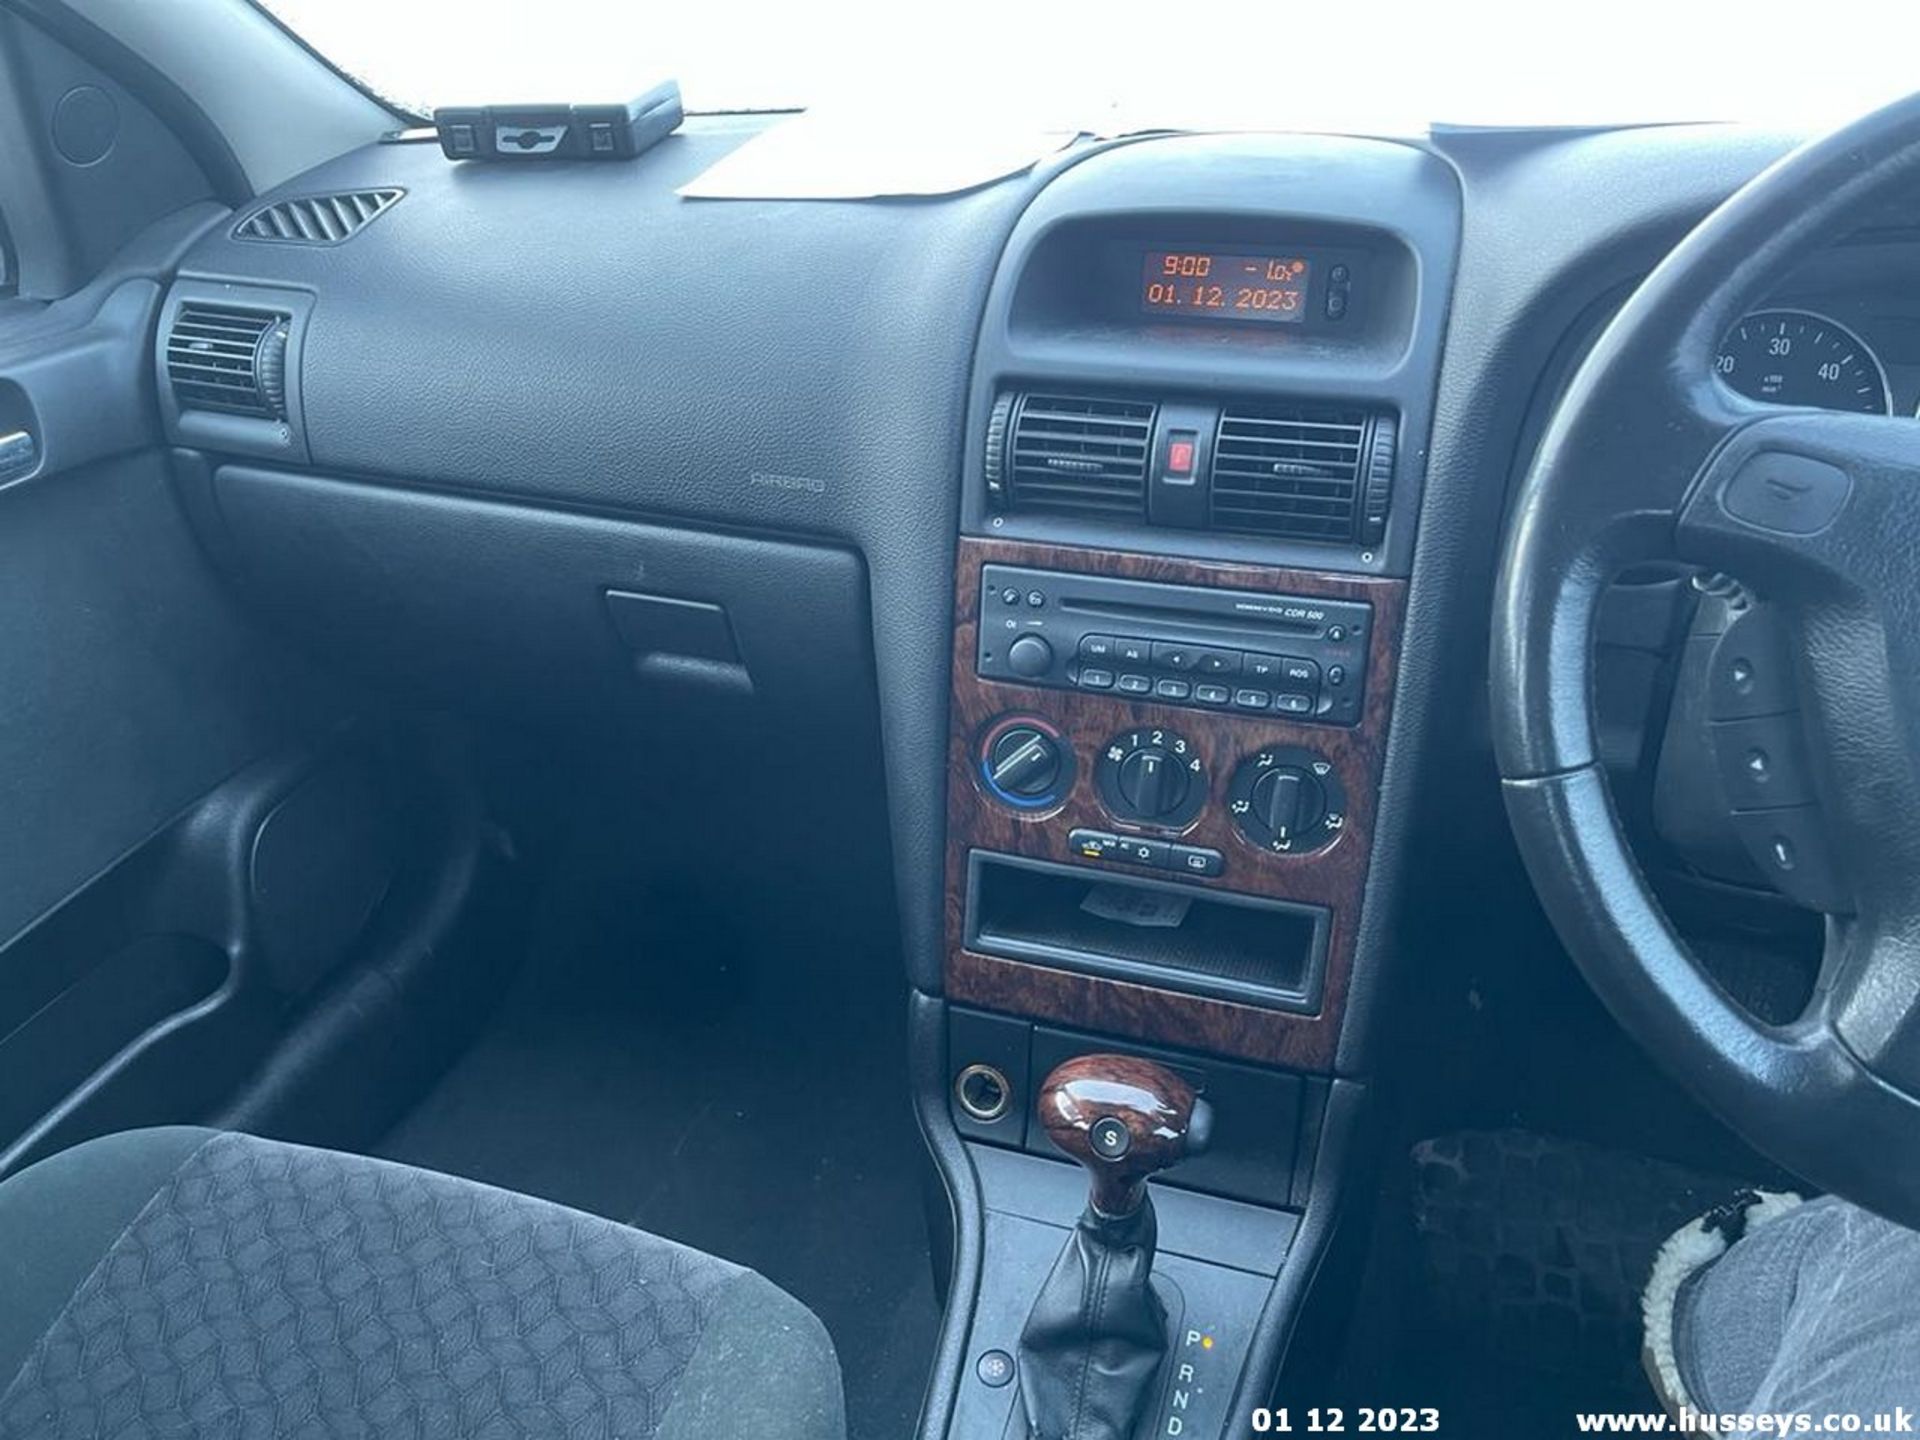 04/04 VAUXHALL ASTRA ELEGANCE DTI AUTO - 1995cc 5dr Hatchback (Silver, 131k) - Bild 6 aus 16